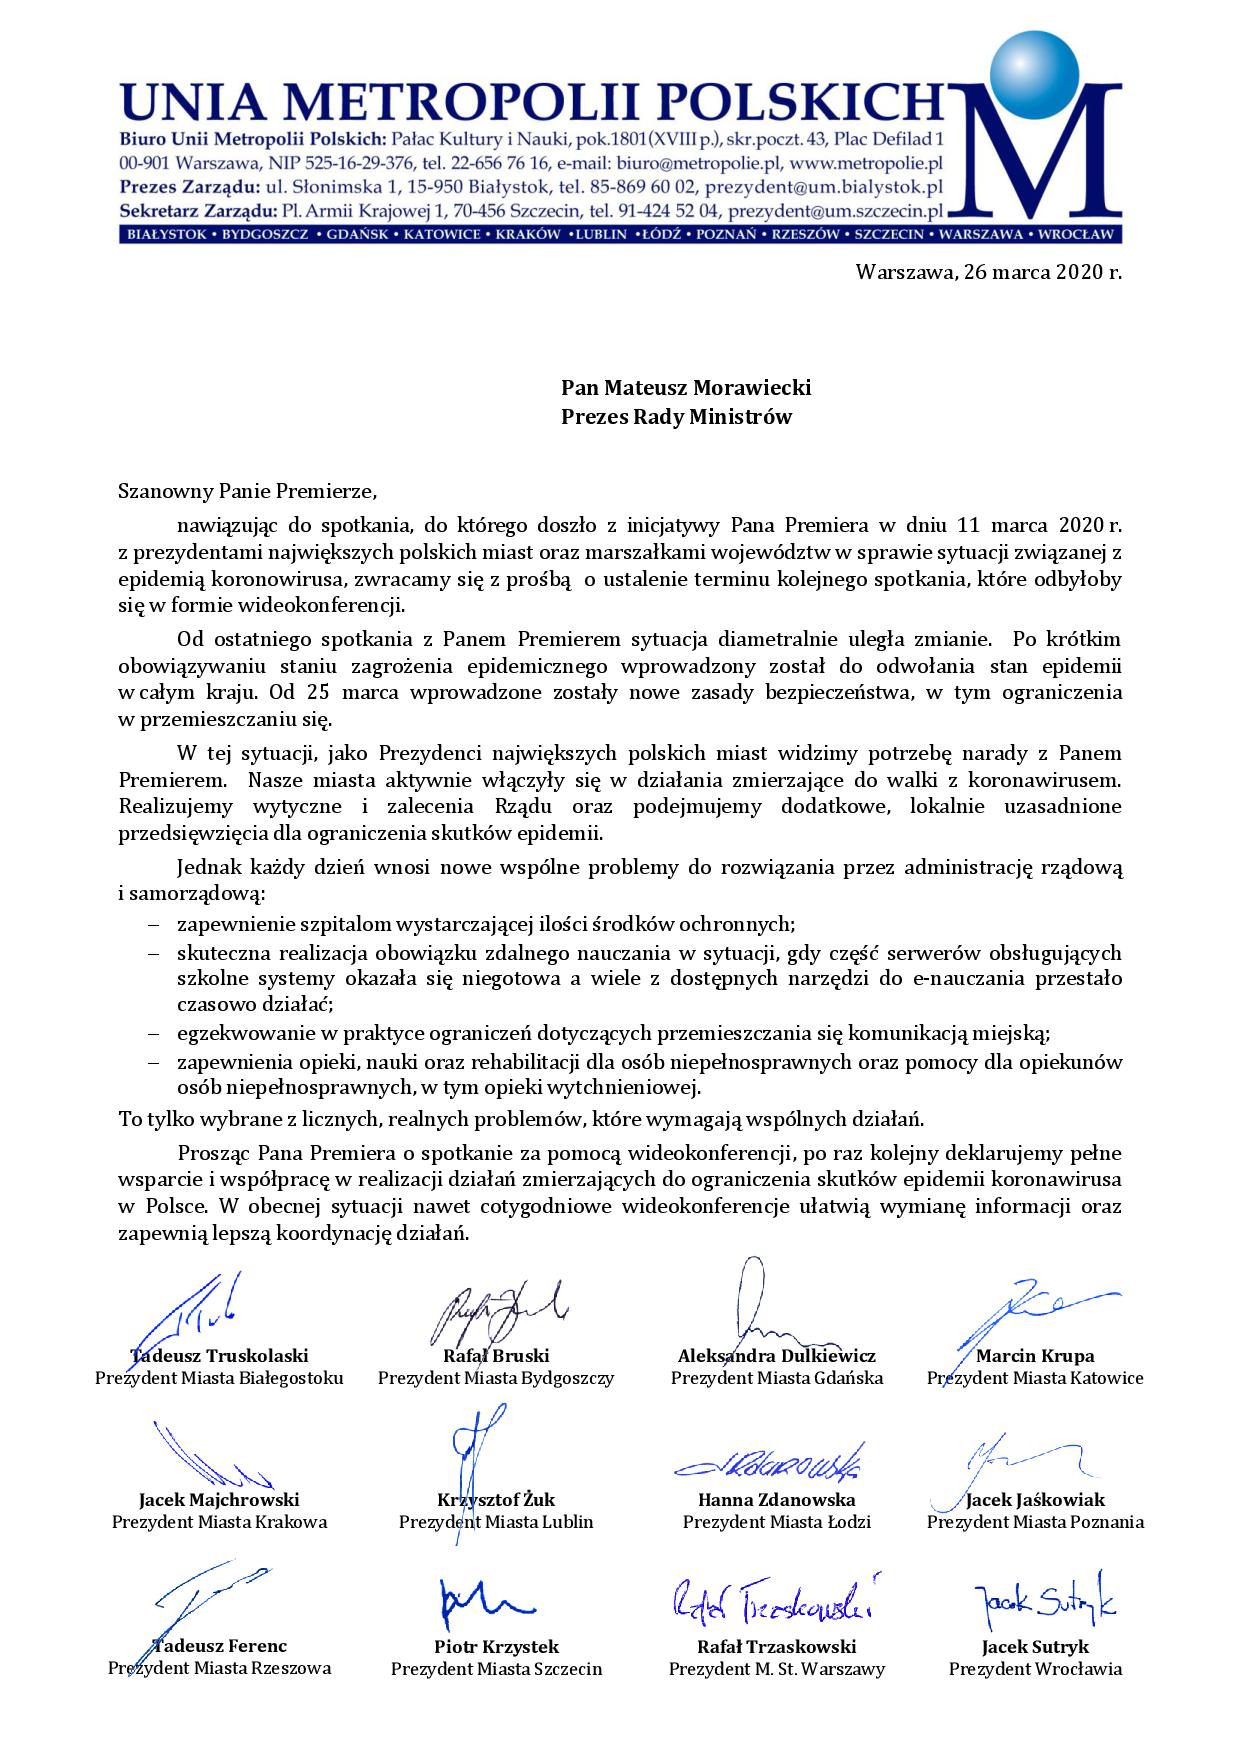 pismo Prezydentów Miast UMP do Premiera M. Morawieckiego